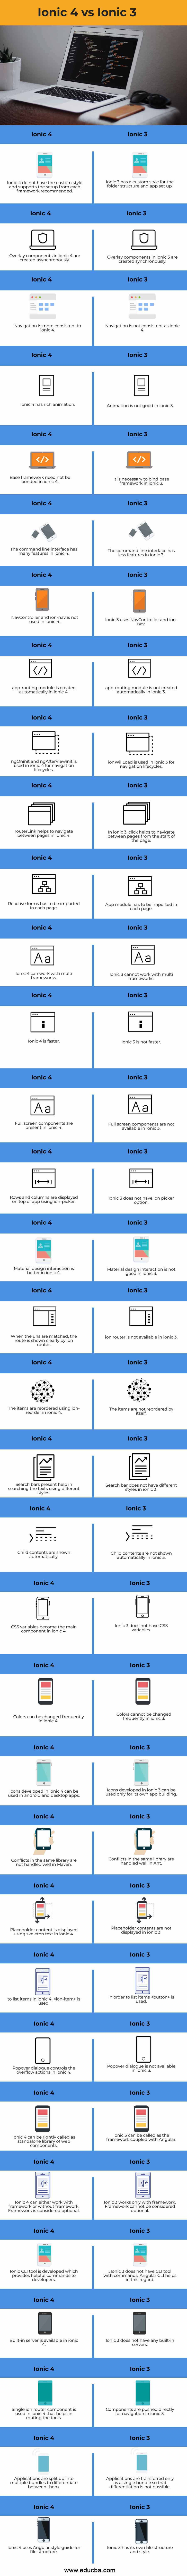 Ionic-4-vs-Ionic-3-info